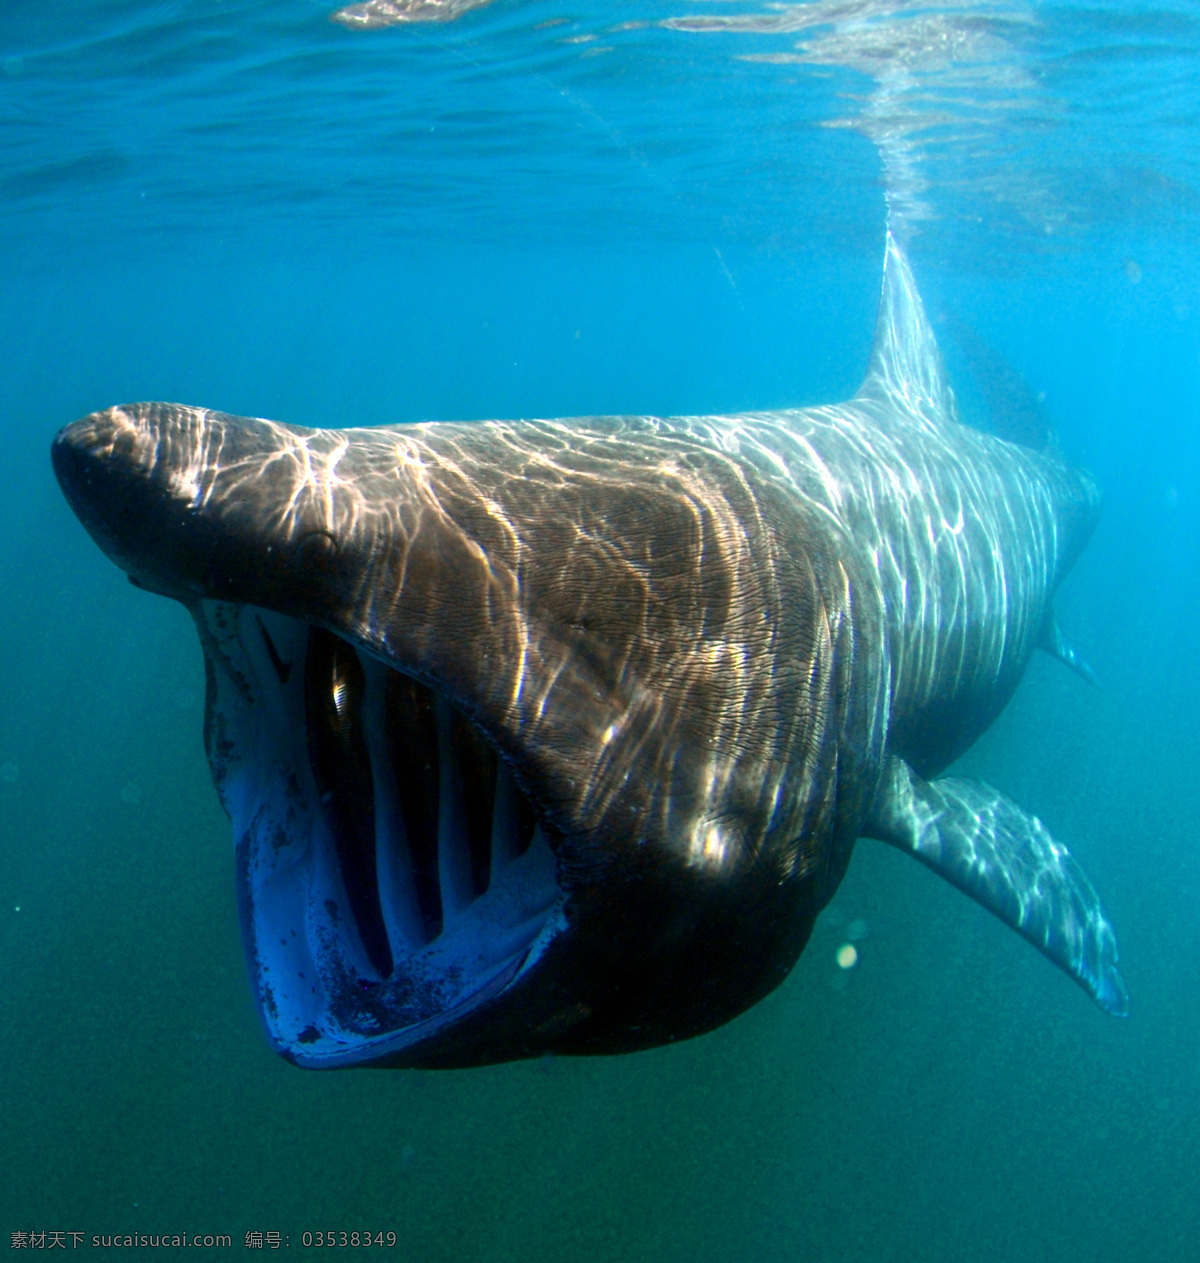 水底 鲨鱼 光影 海底 海洋生物 蓝色 生物世界 鱼类 水底鲨鱼 大牙齿